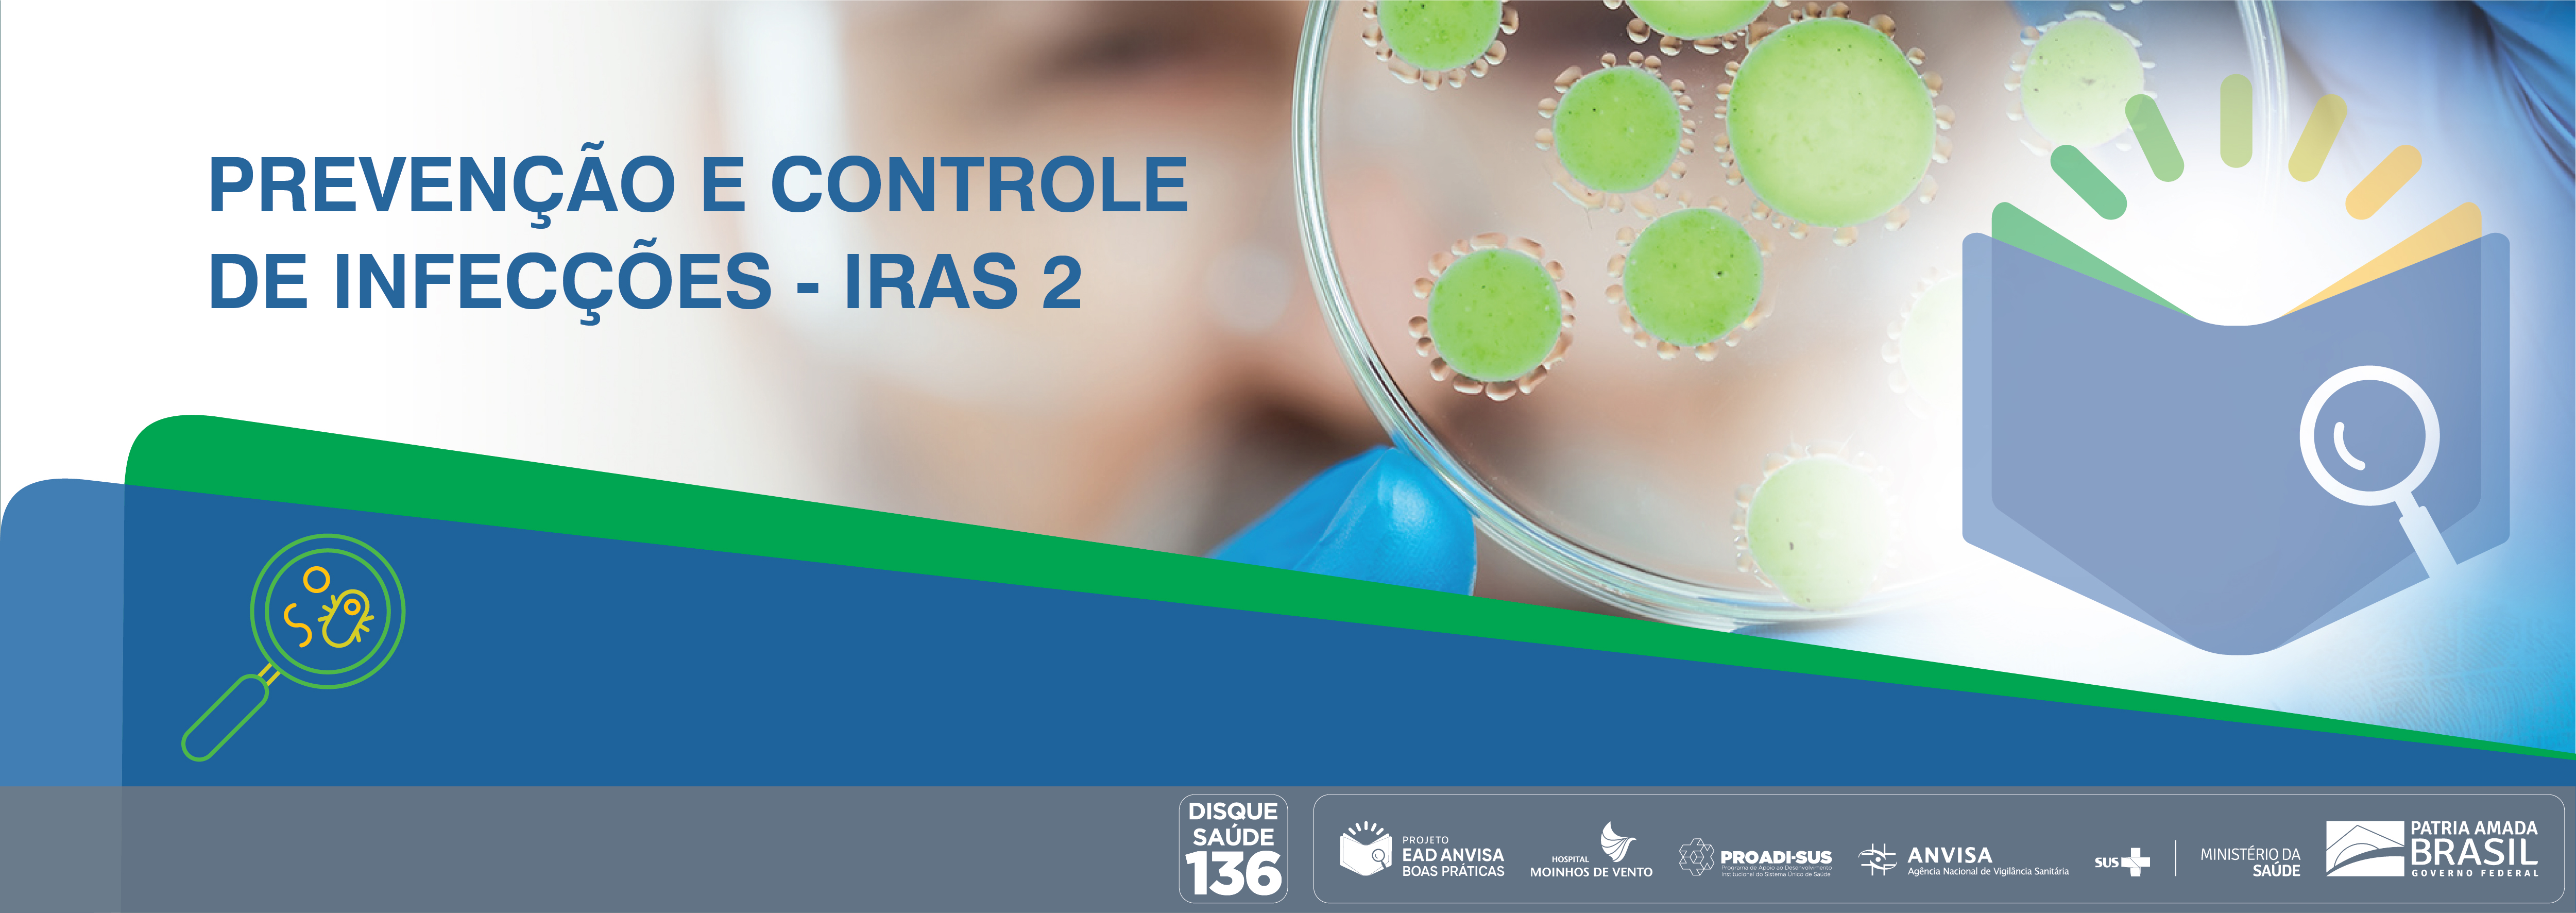 Boas Práticas de Inspeção em Serviços de Saúde com foco nas Ações de Prevenção e Controle das Infecções Relacionadas à Assistência à Saúde e Resistência Microbiana (RM) - Módulo 2 ANVISA_2020_IRAS2_V2